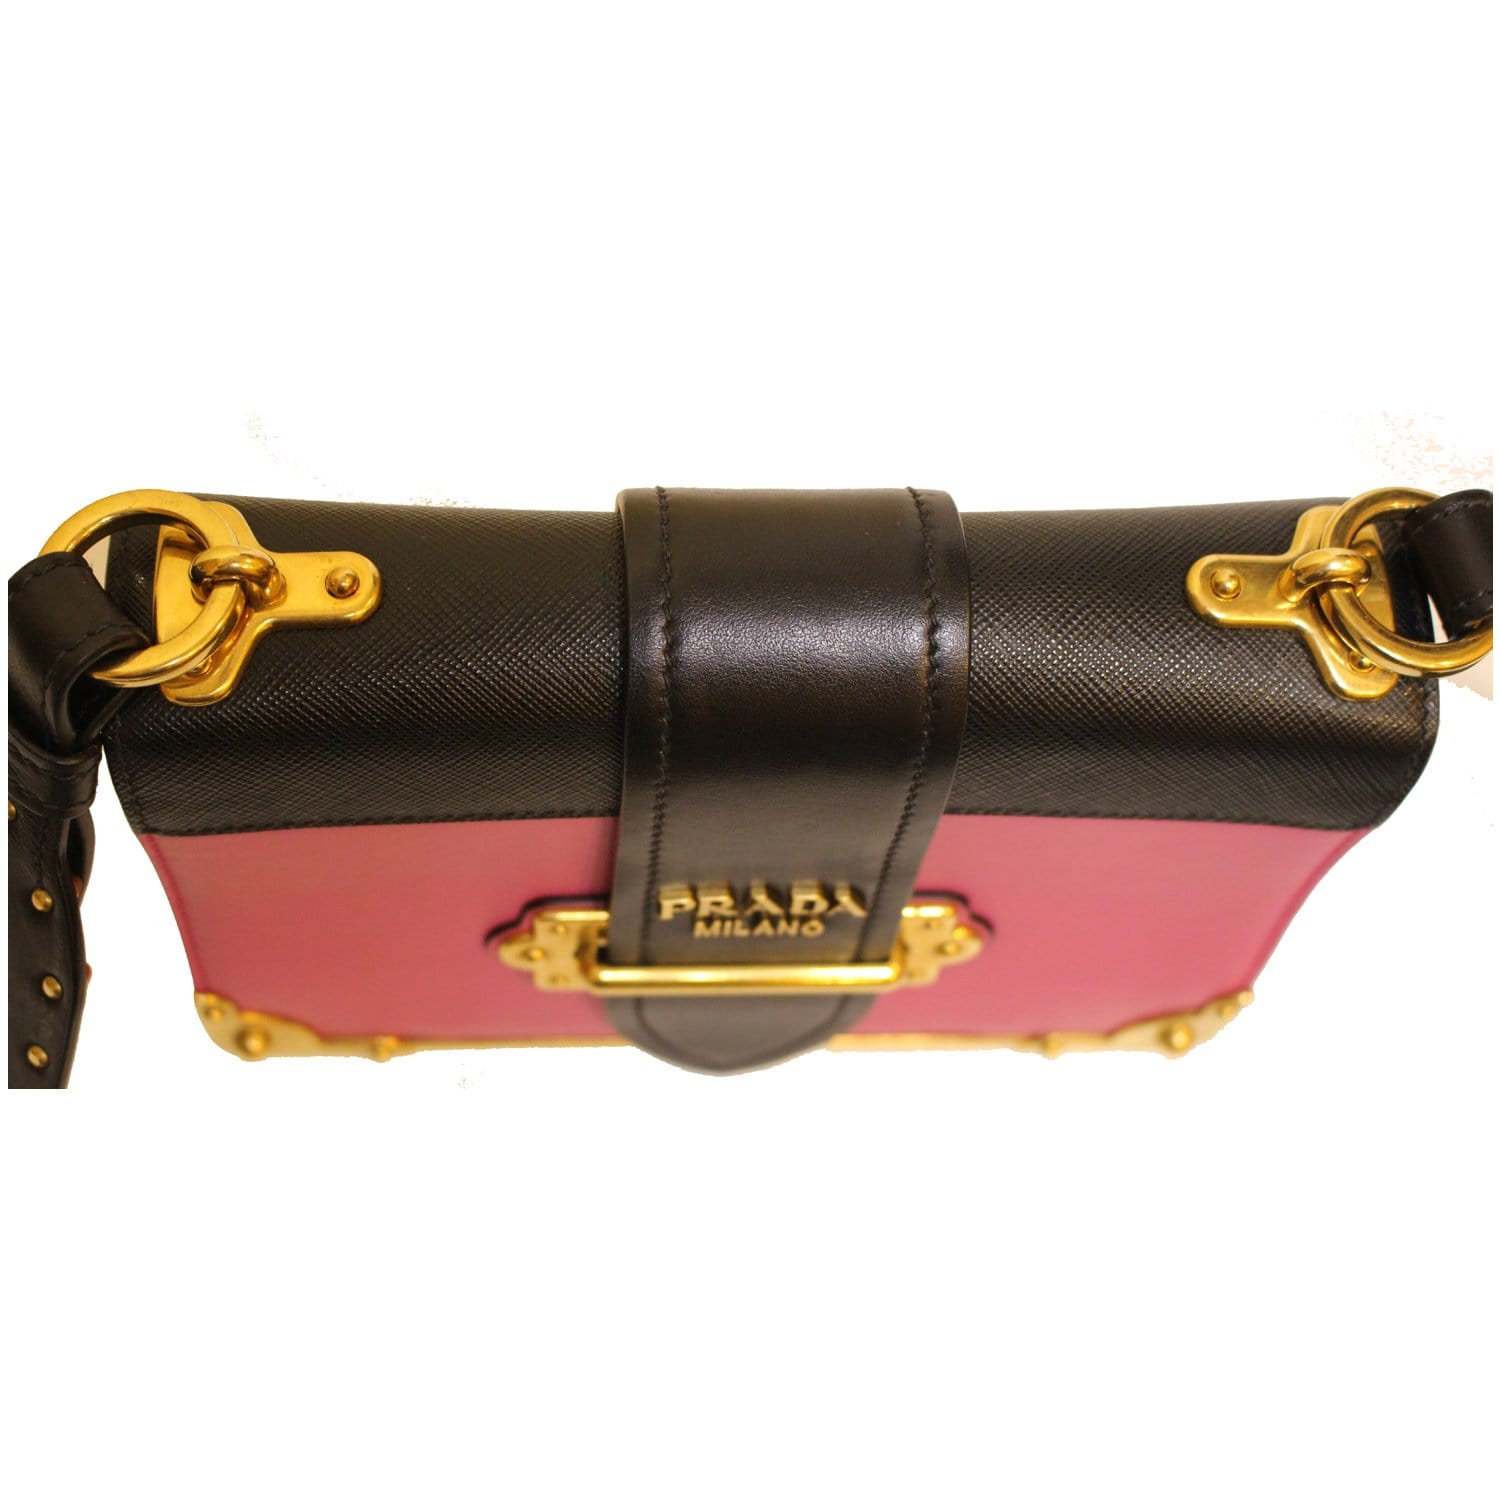 Prada City Calf Black Saffiano Leather Cahier Shoulder Bag - A World Of  Goods For You, LLC